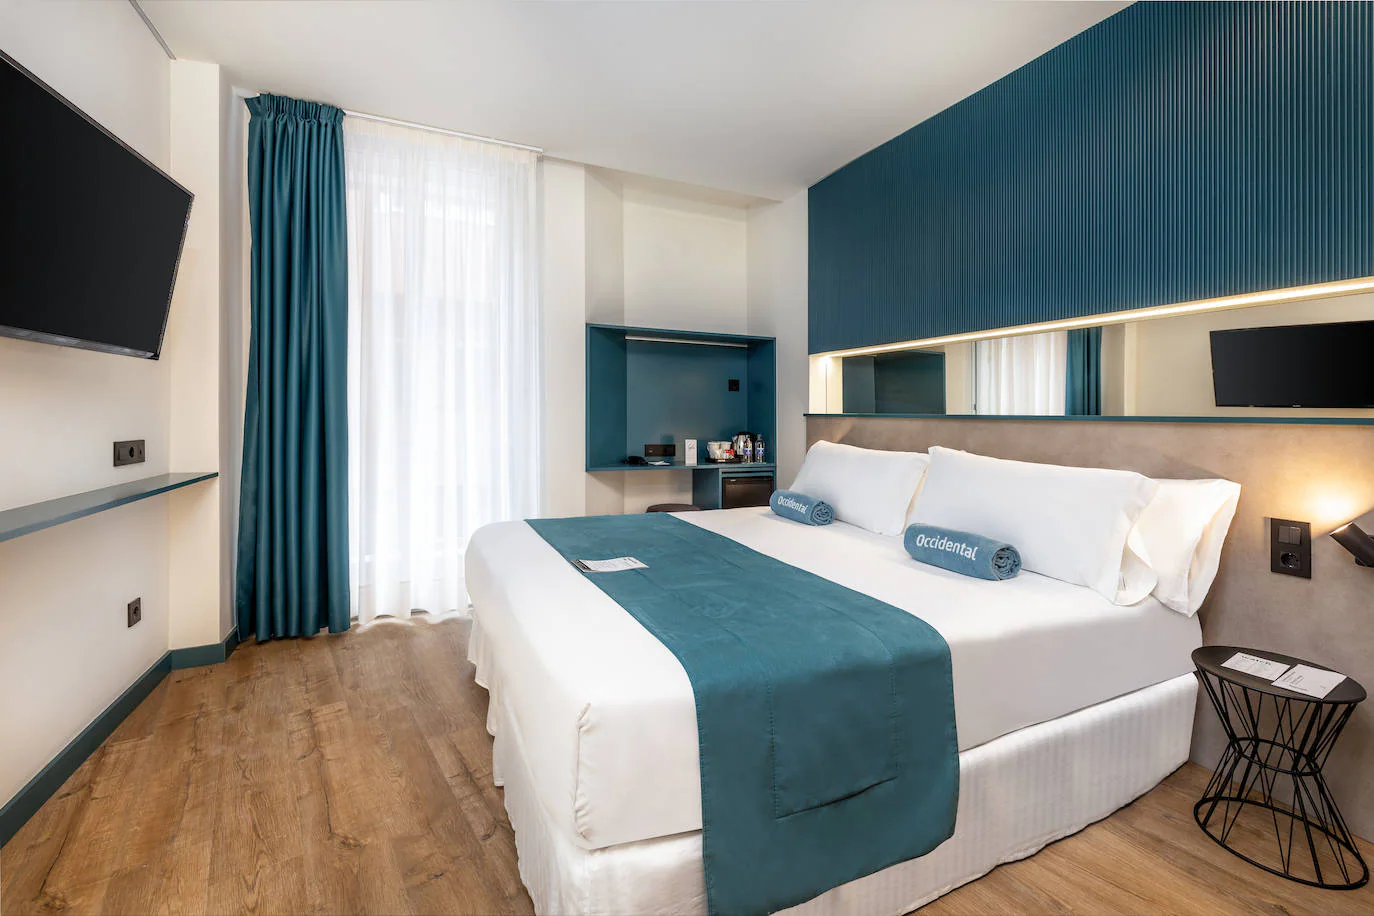 Imagen secundaria 1 - Barceló Hotel Group inaugura un nuevo hotel en Las Palmas de Gran Canaria